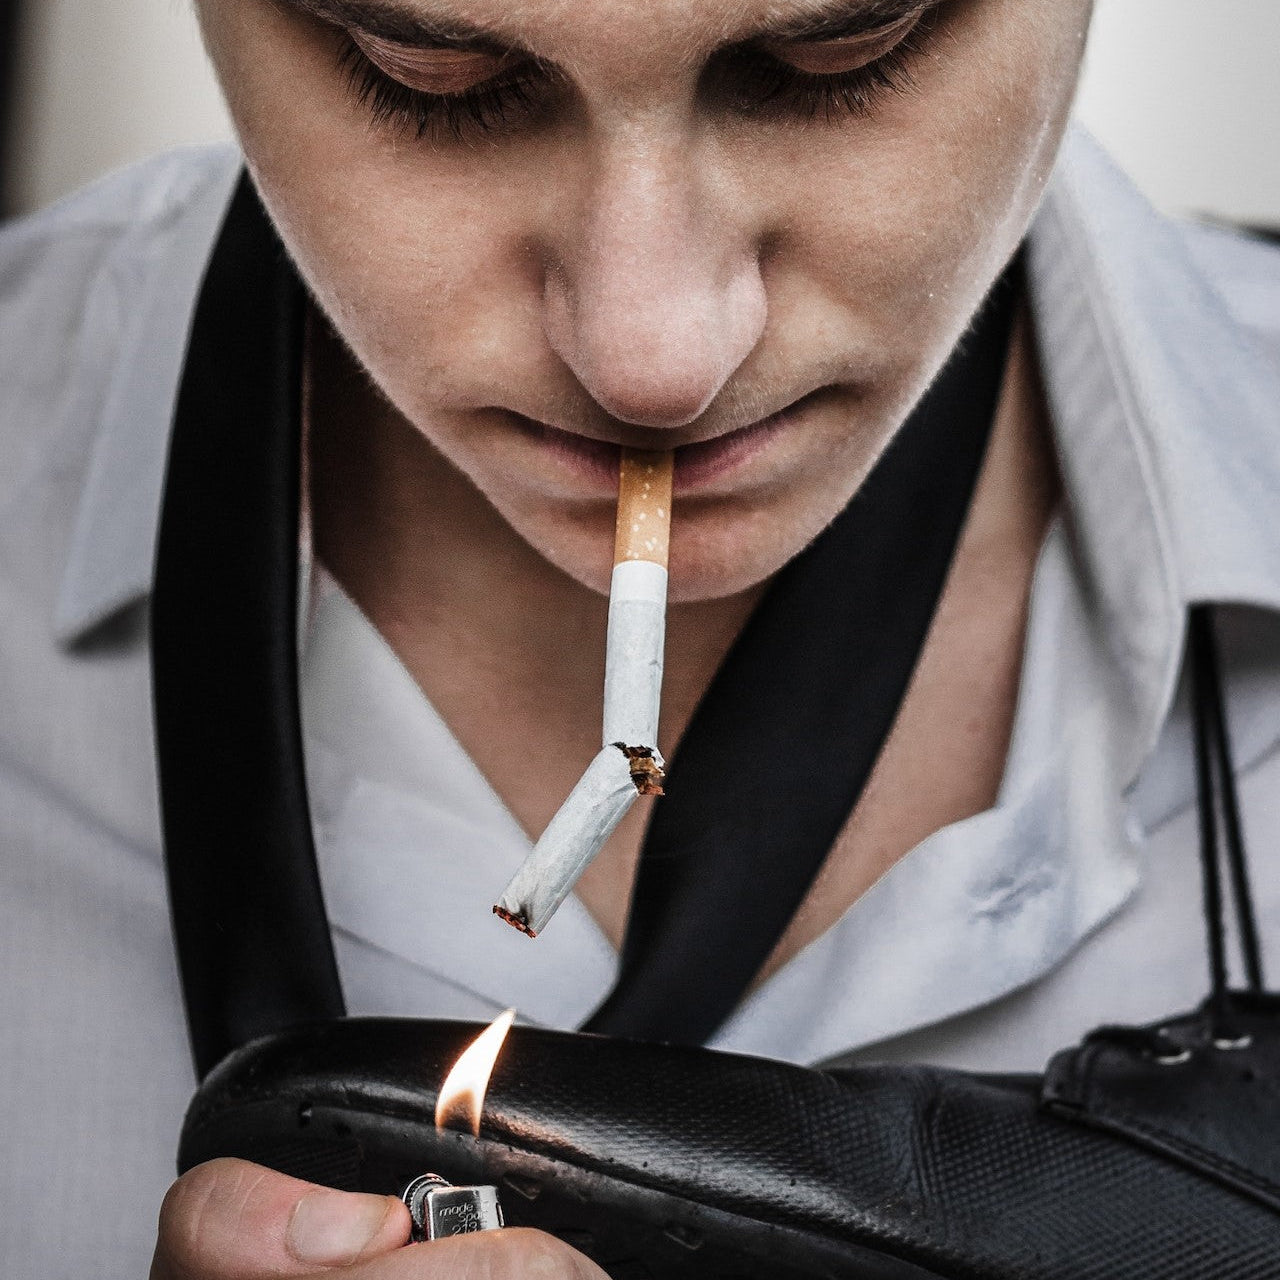 Mann mit Zigarette